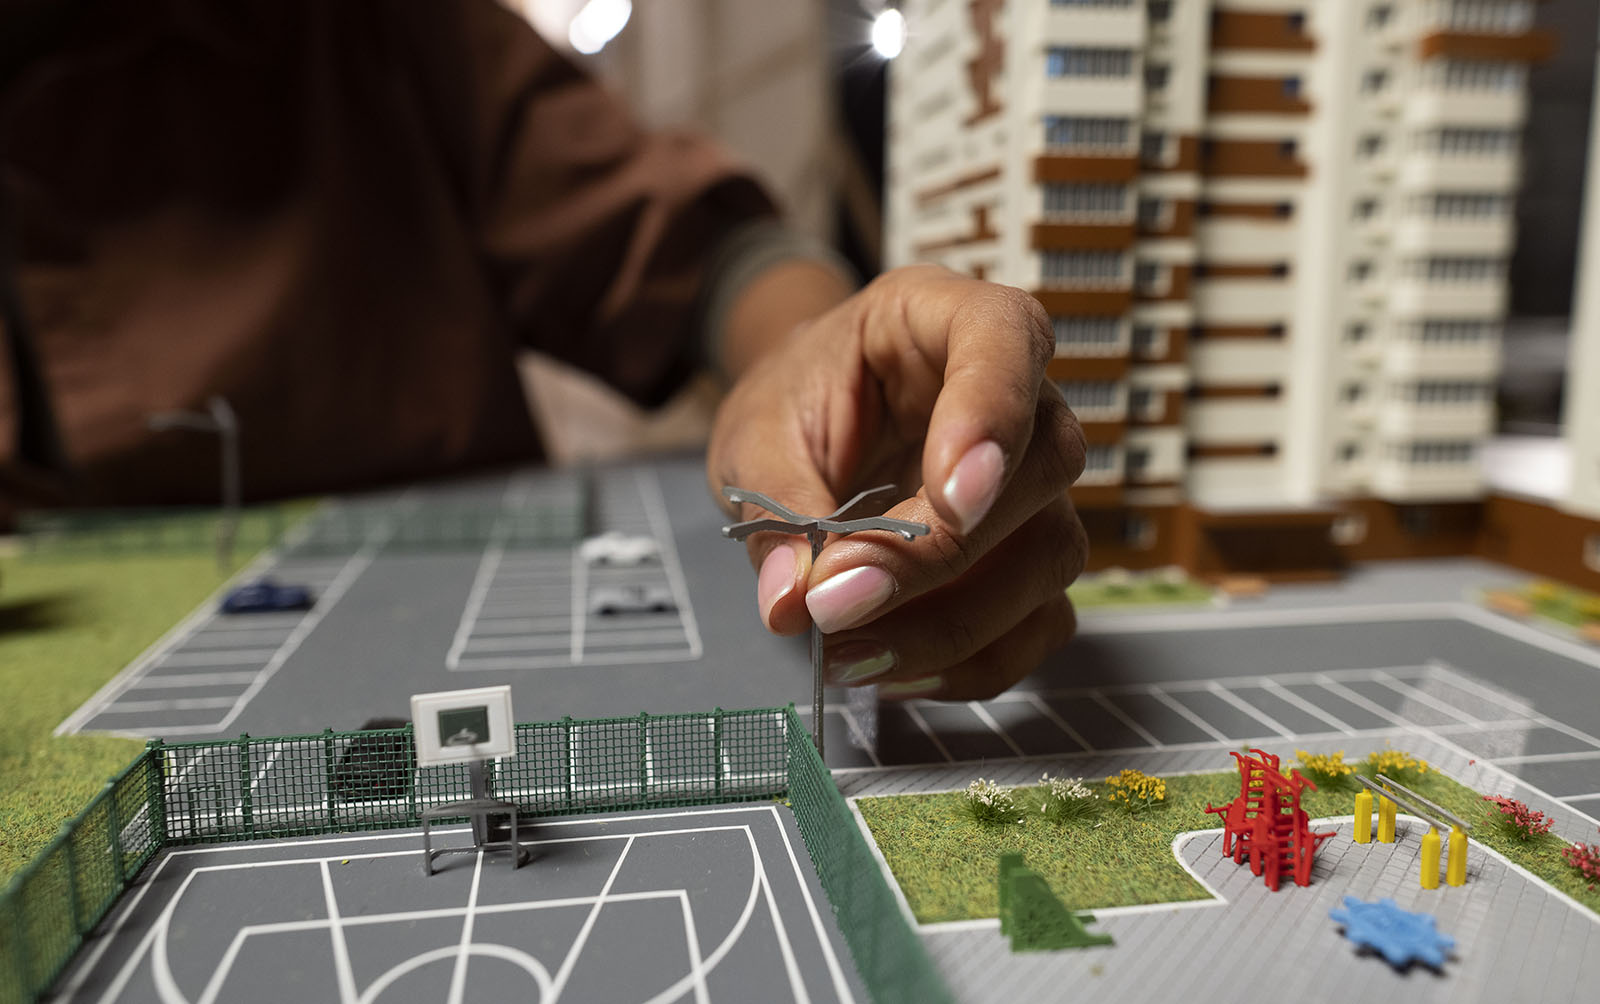 Изображение модели жилого комплекса для статьи на тему: "Анализ рынка жилищного строительства"